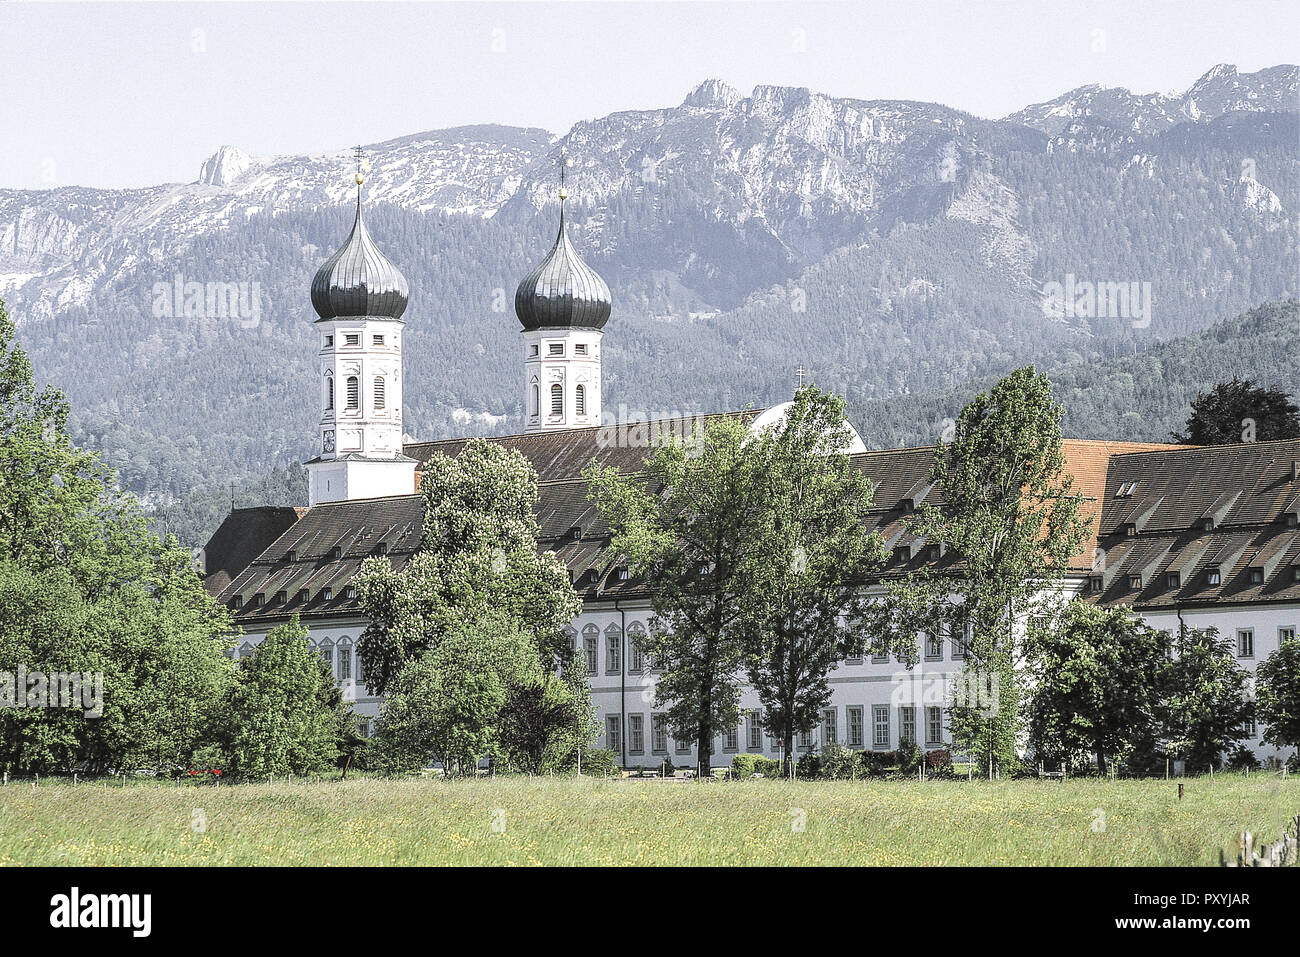 Kloster de Benediktbeuren, Bayern, Deutschland Foto de stock